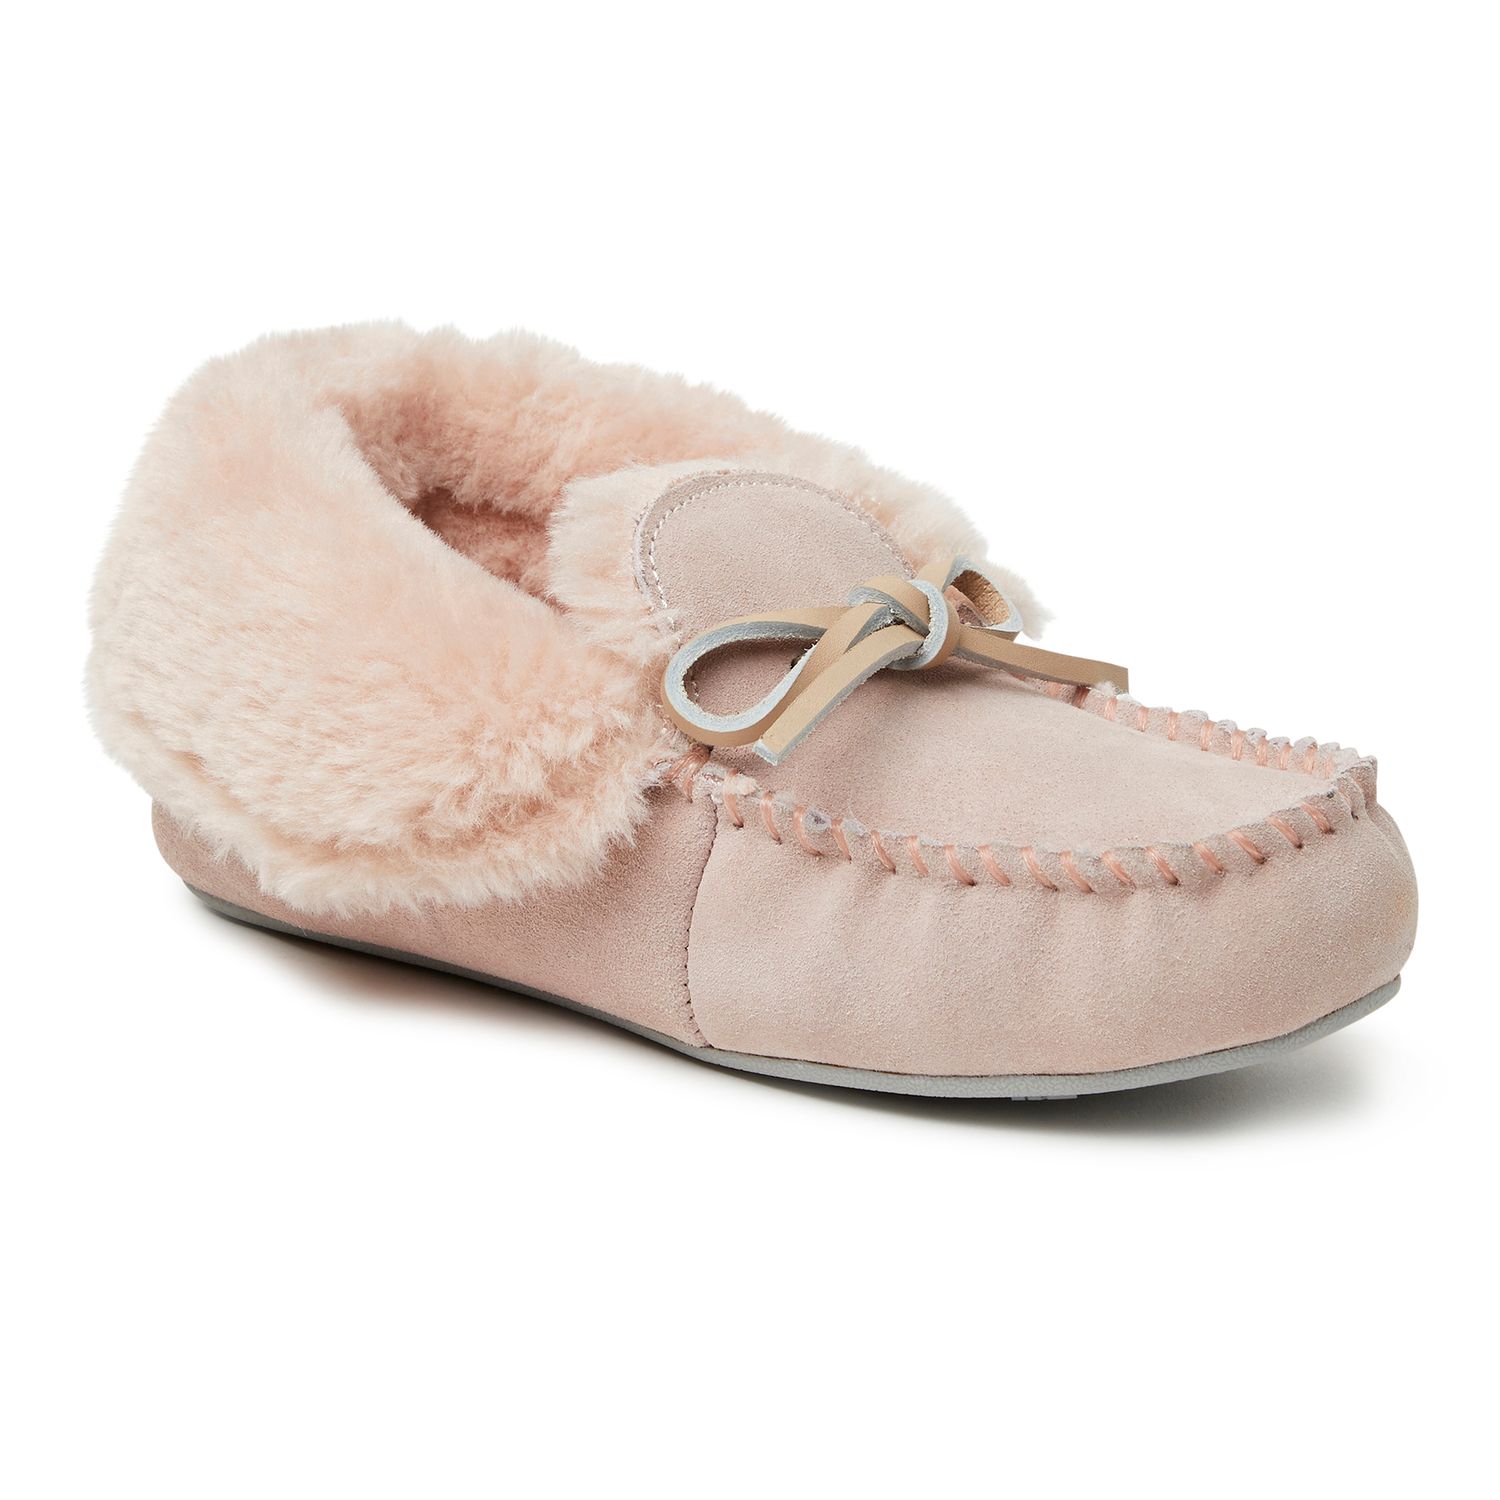 women's dearfoam moccasin slippers